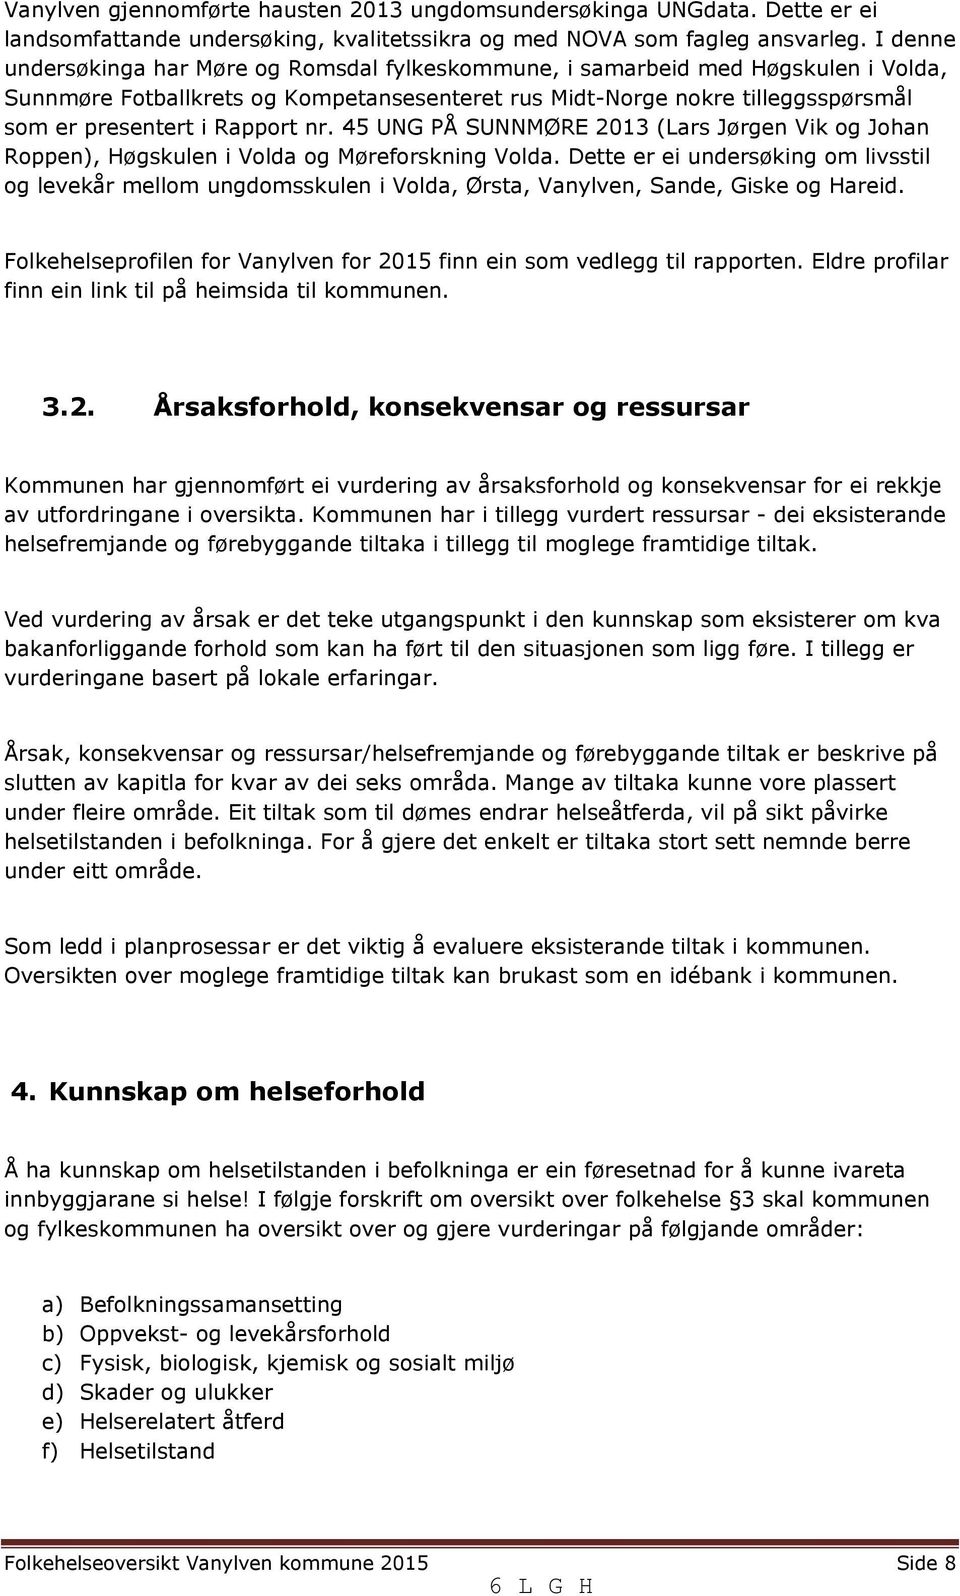 Rapport nr. 45 UNG PÅ SUNNMØRE 2013 (Lars Jørgen Vik og Johan Roppen), Høgskulen i Volda og Møreforskning Volda.